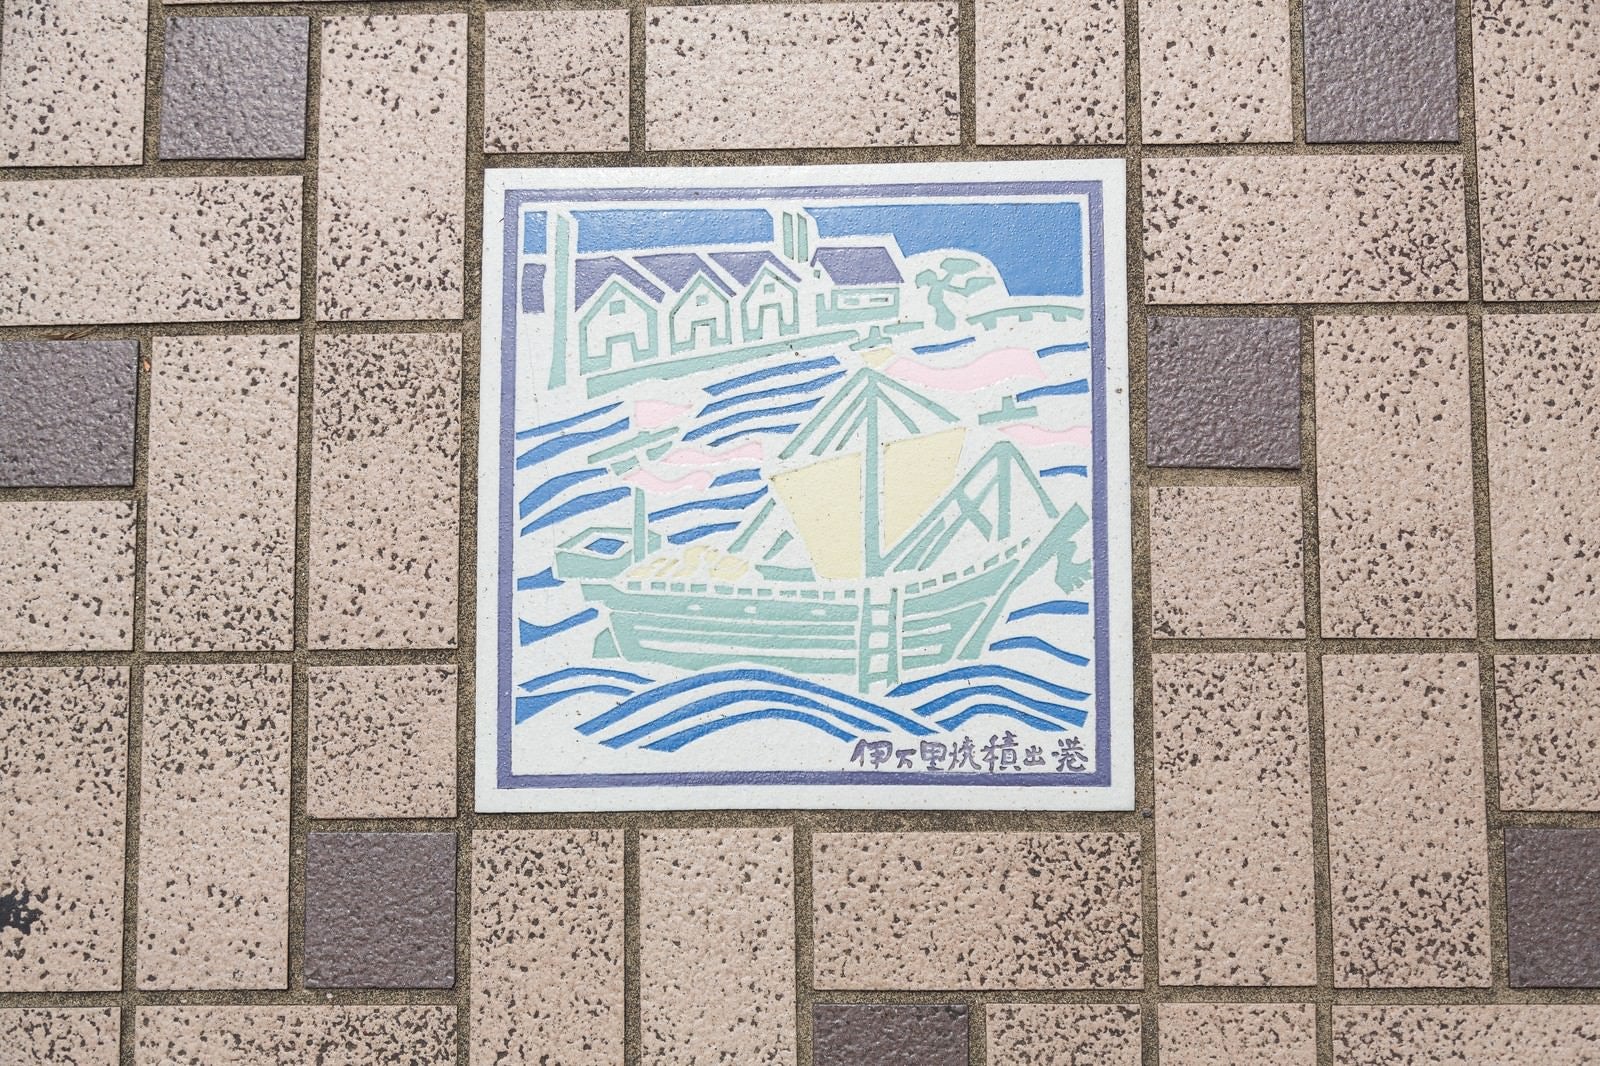 「「伊万里焼積出港」と描かれたタイル」の写真